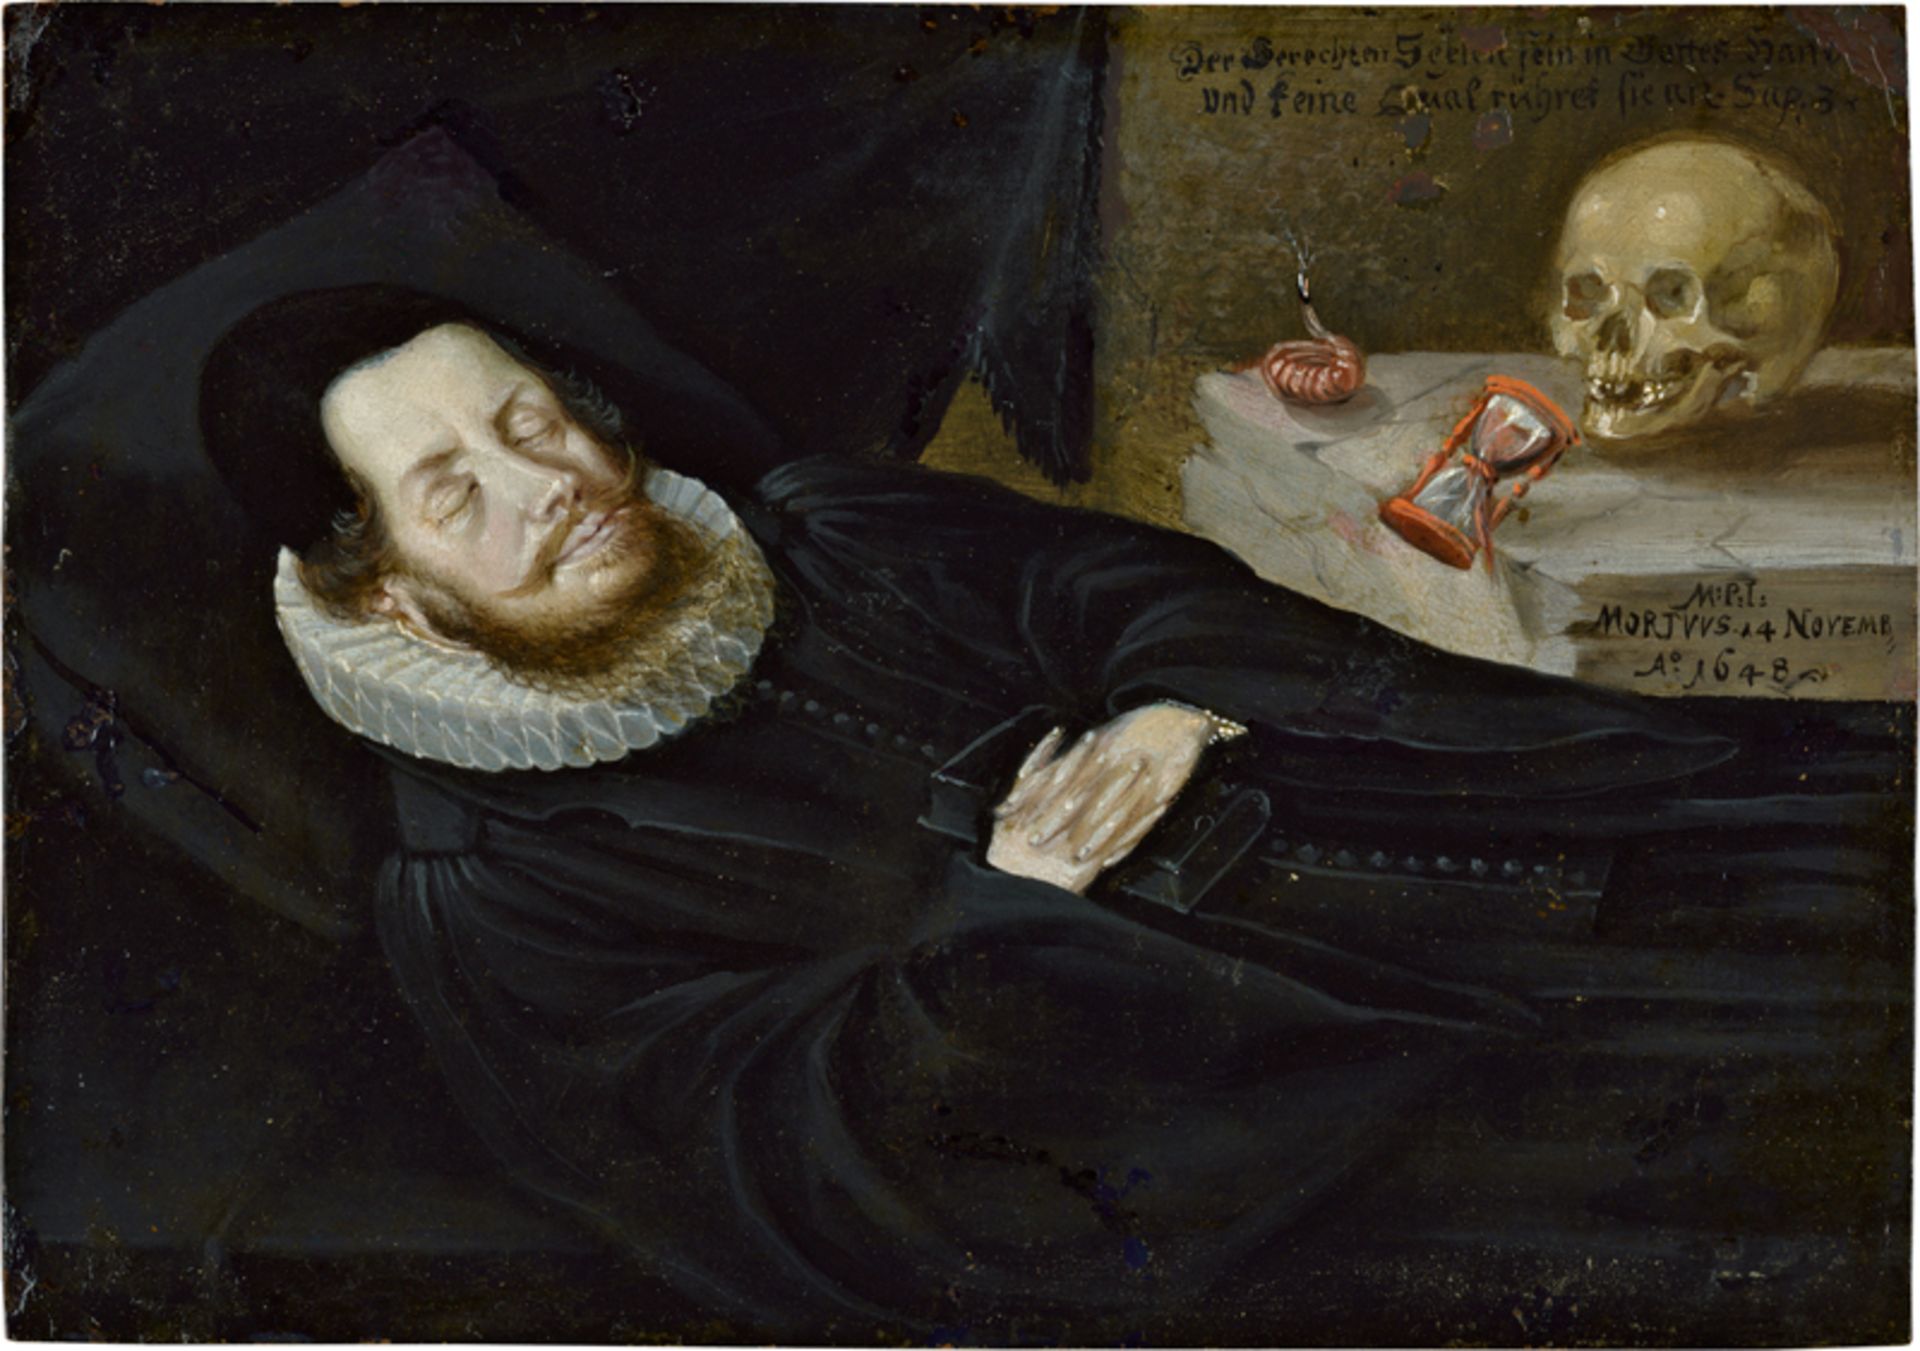 Nürnberg: 1648. Ein Edelmann auf dem Totenbett